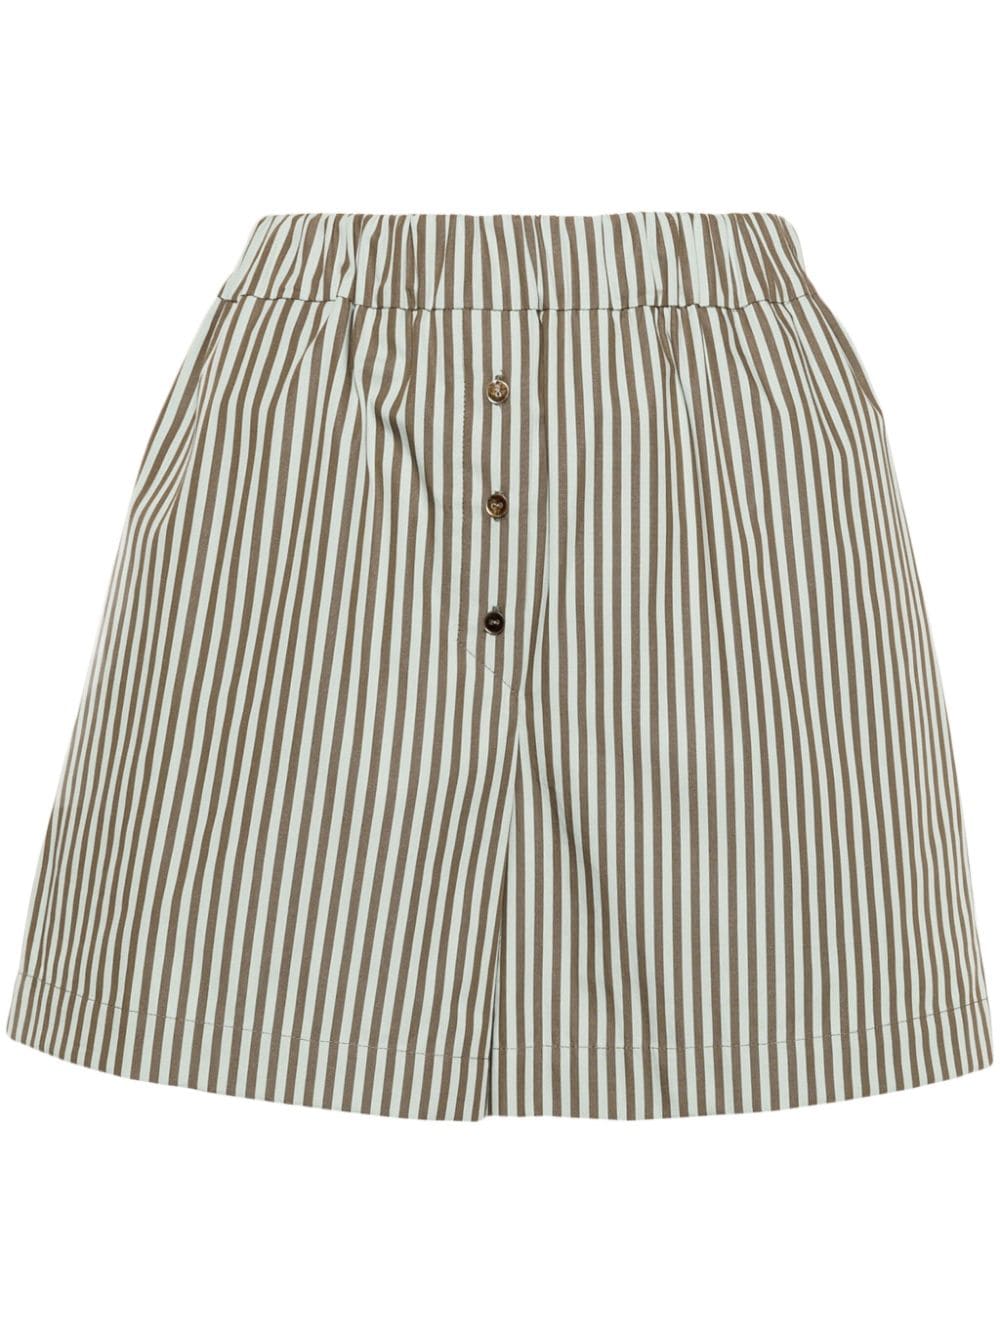 Claudie Pierlot high-waisted striped short shorts - Green von Claudie Pierlot